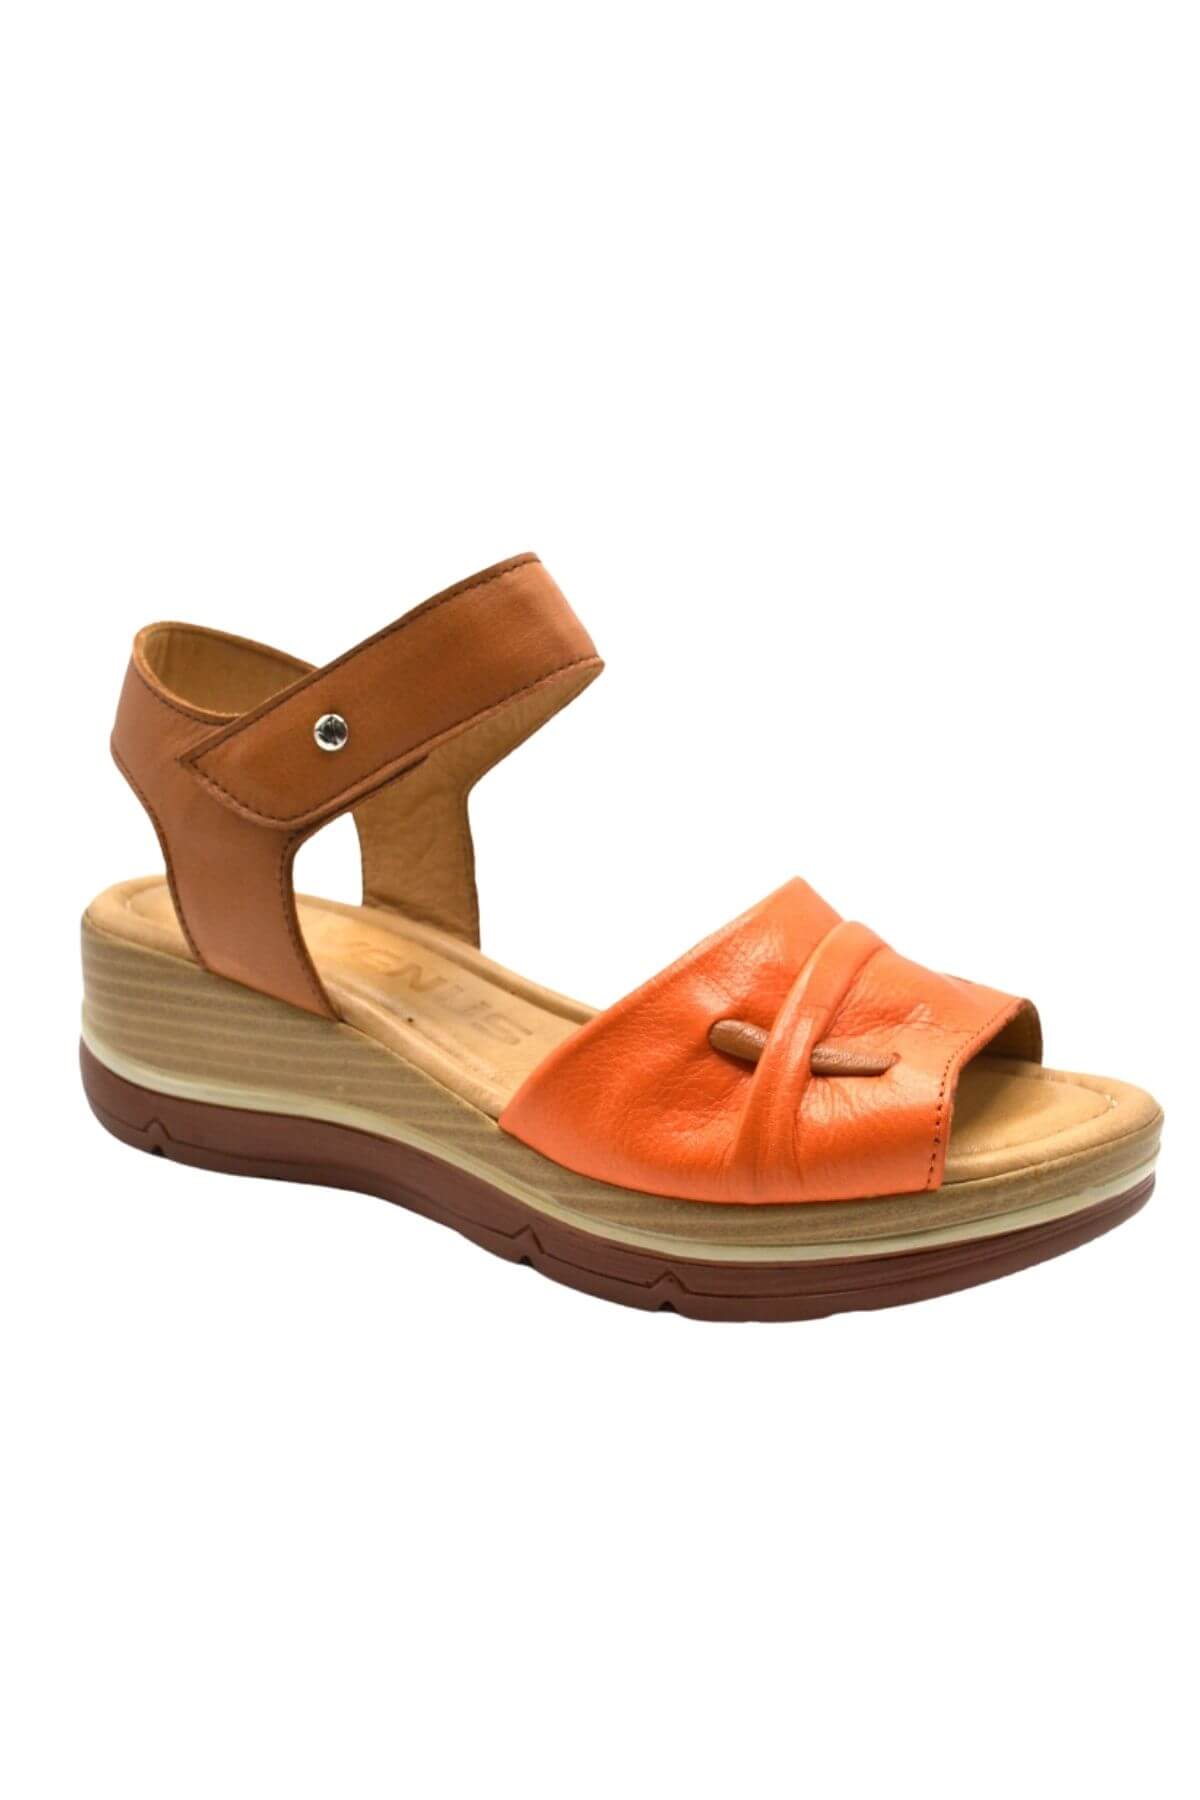 Kadın Comfort Deri Sandalet Oranj 2313402Y